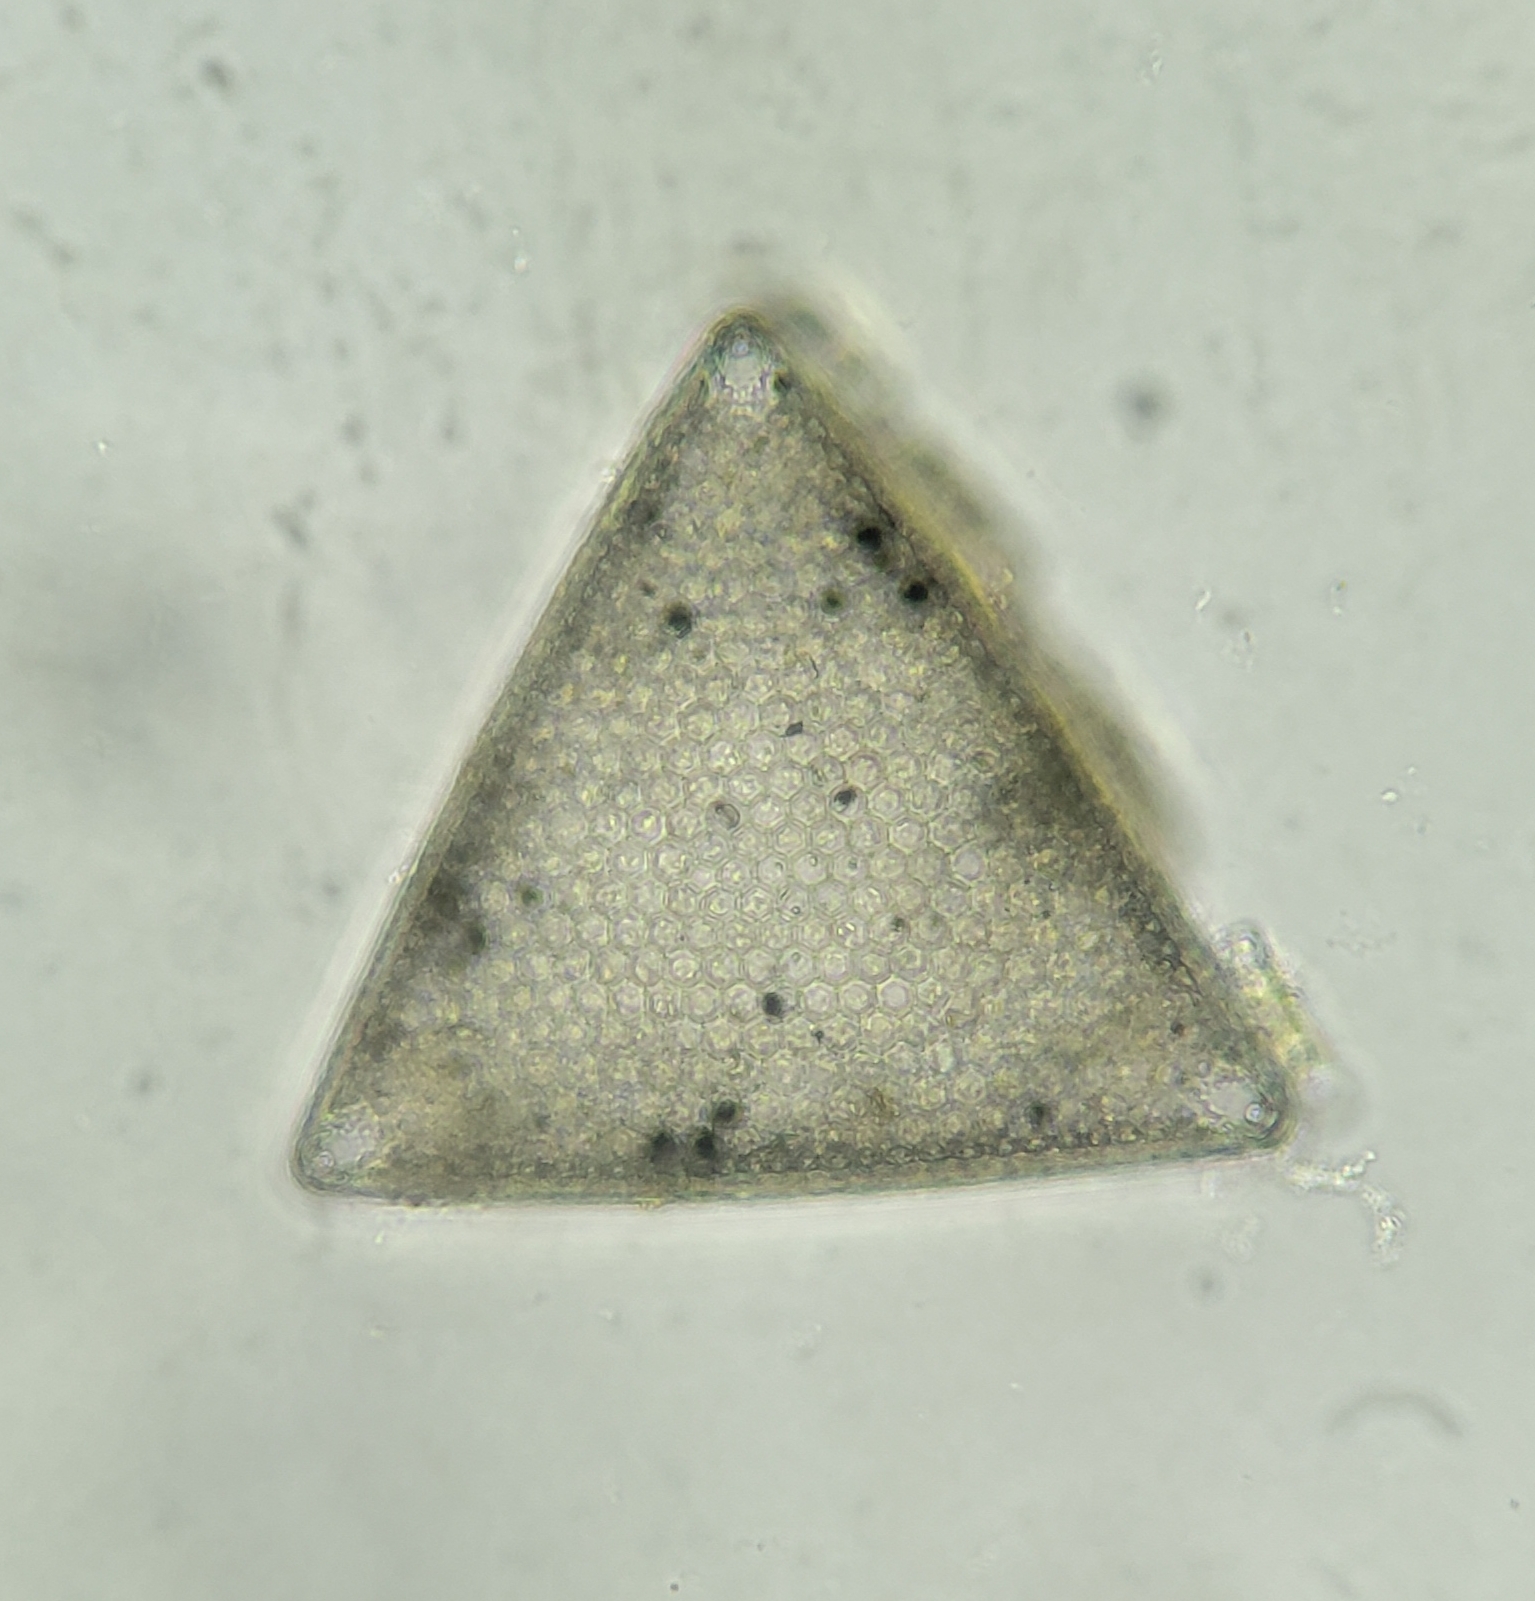 Una diatomea triangular: podrías dibujar tres líneas de simetría a través de esta